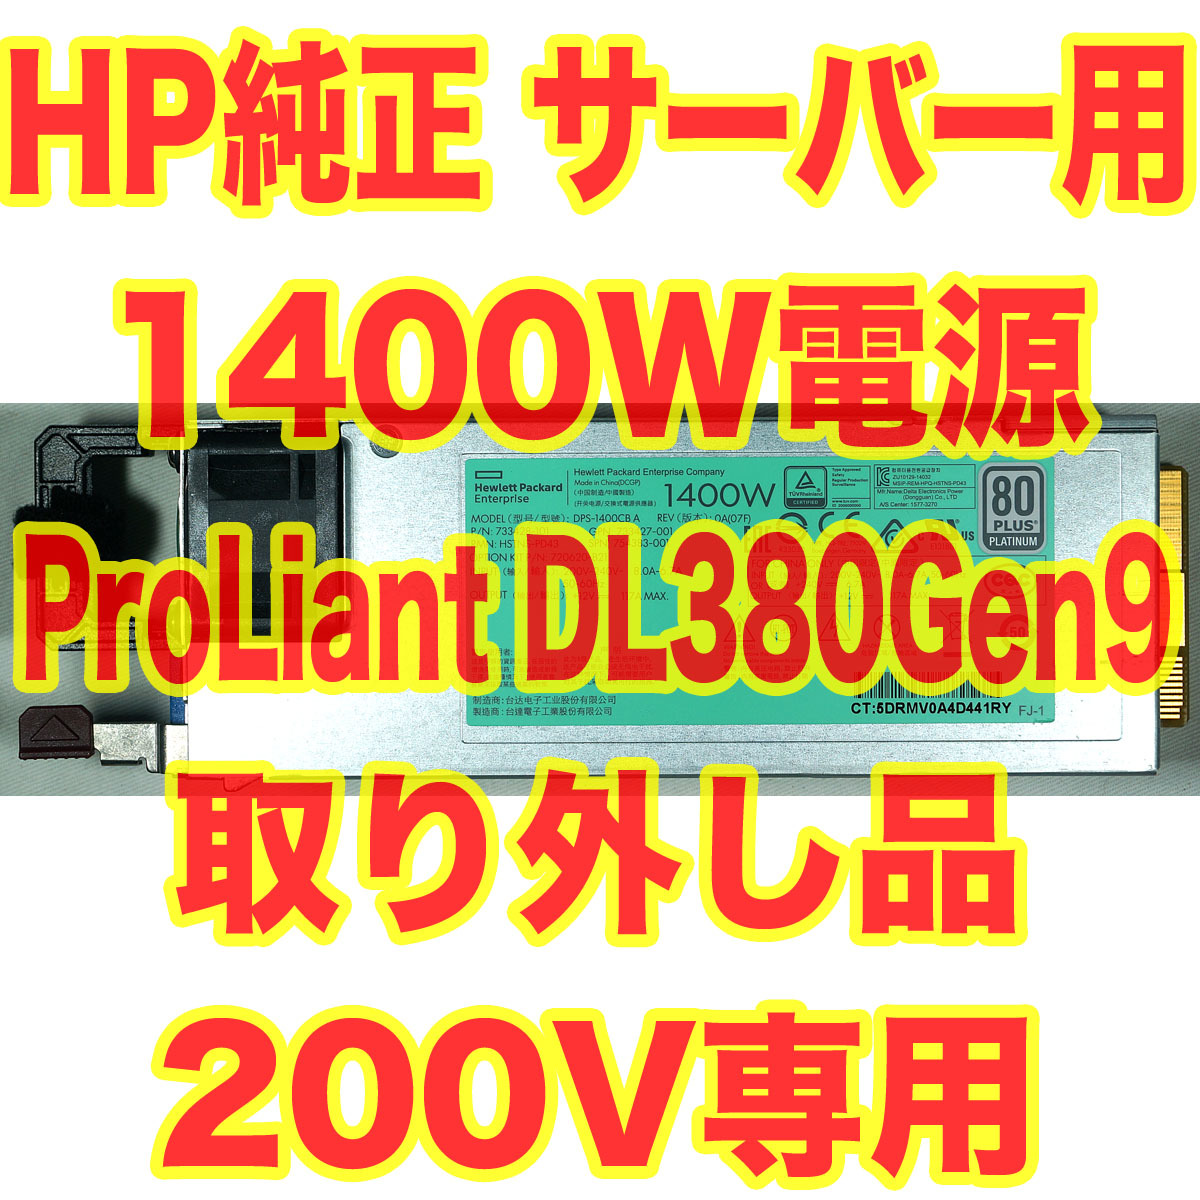 200V専用 HP ProLiant サーバー用 1400W 12V 電源 DL380 Gen9 取外品 80Plus Platinum nvidia TESLA グラボ搭載に DPS-1400CB A ②